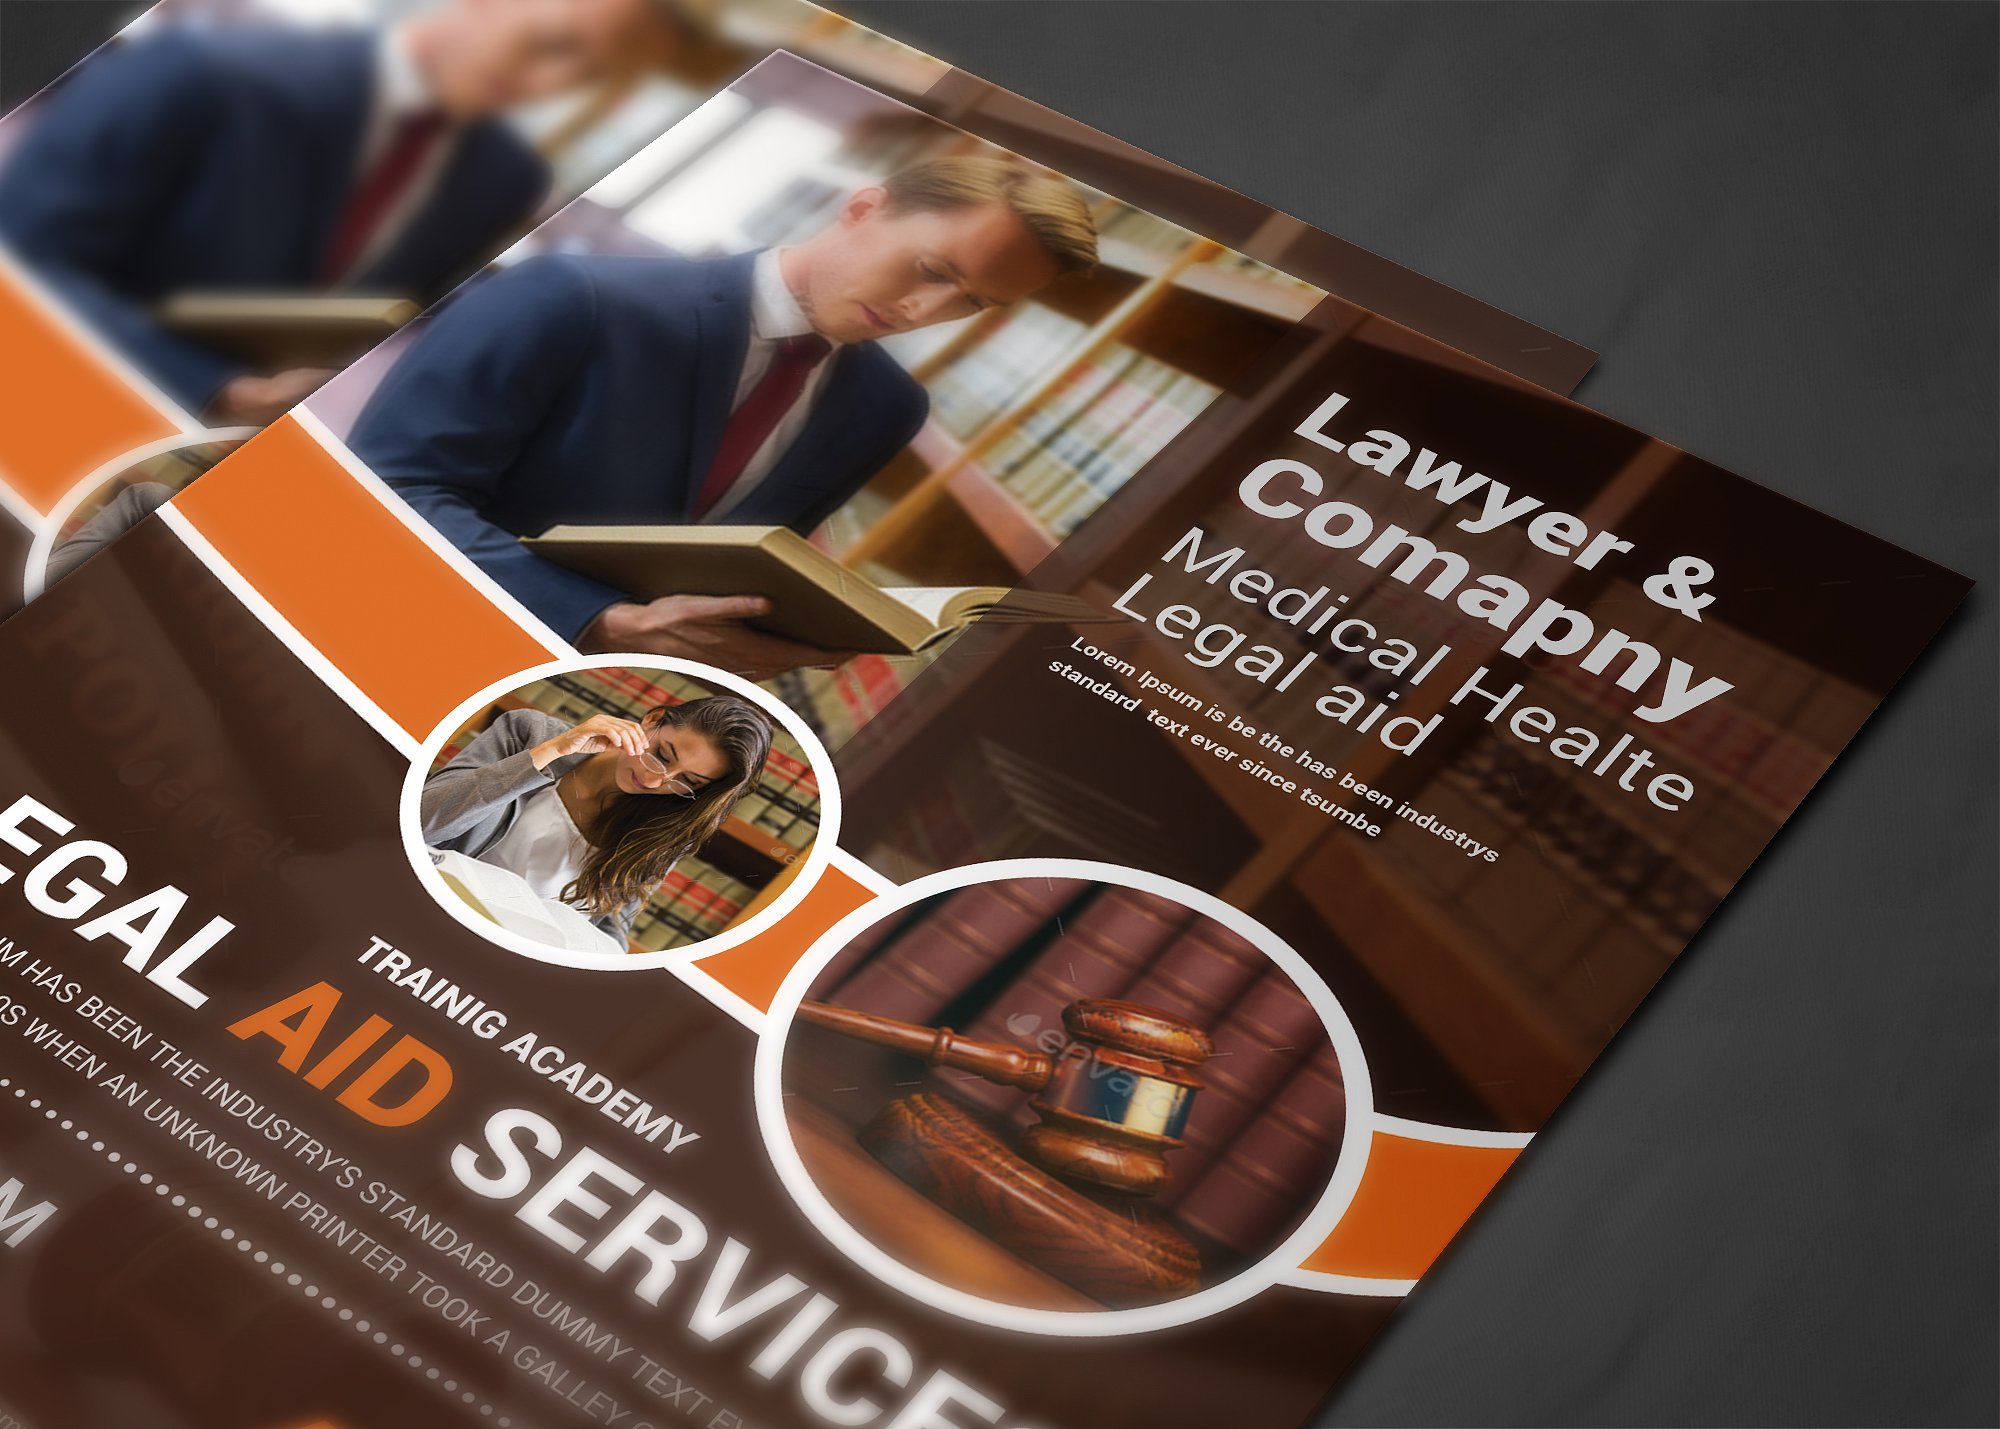 律师事务所宣传海报传单设计模板 Lawyer Firm Business Flyer Template插图(3)